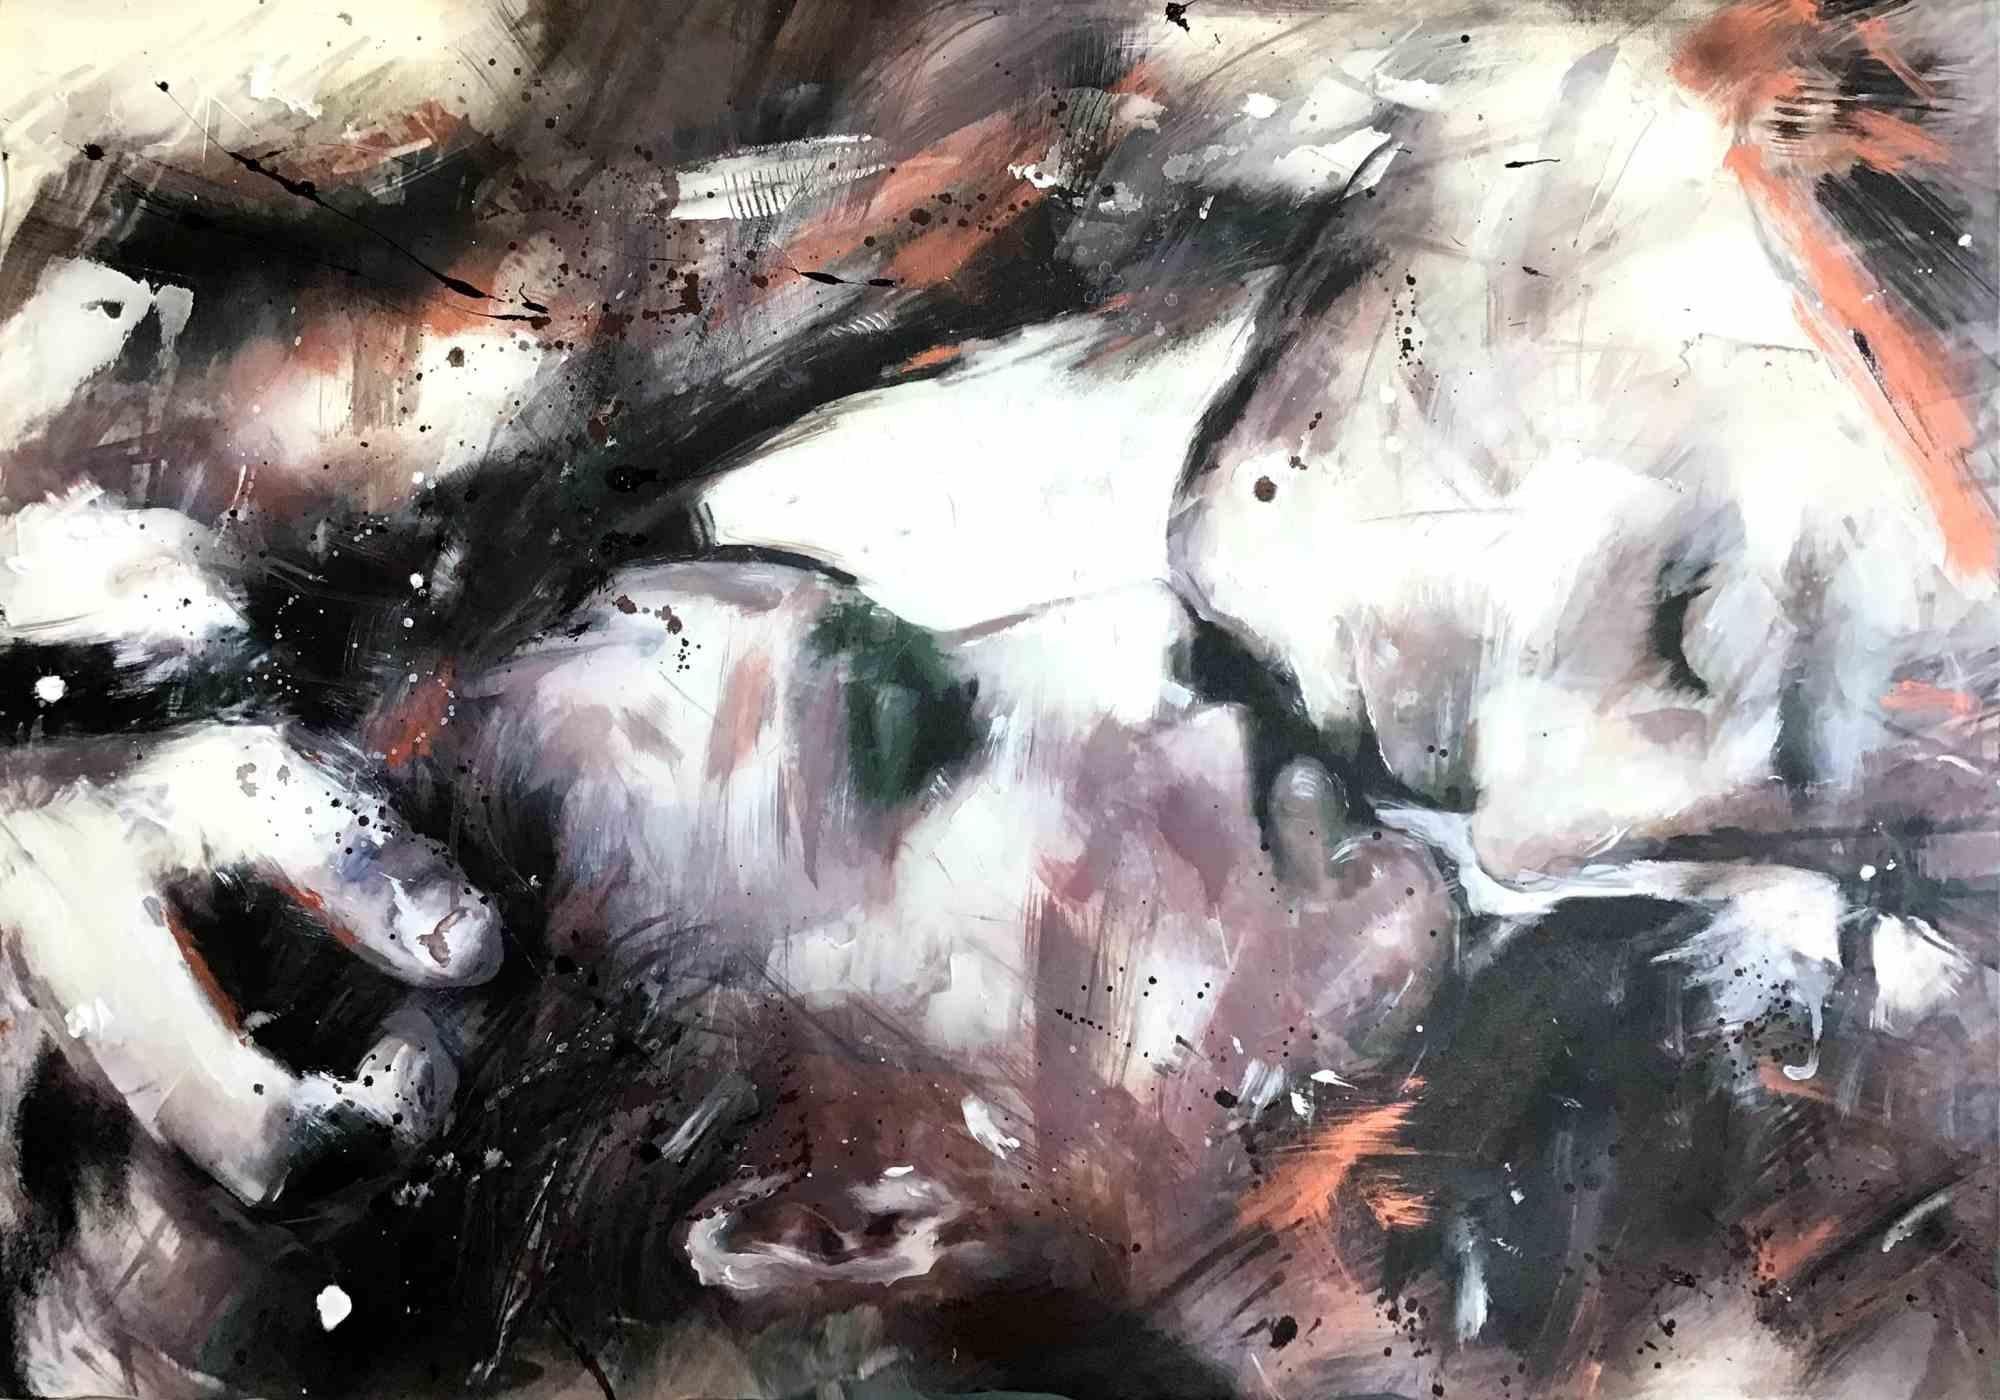 The Kiss - Acrylics on Canvas by Ivana Burello - 2020